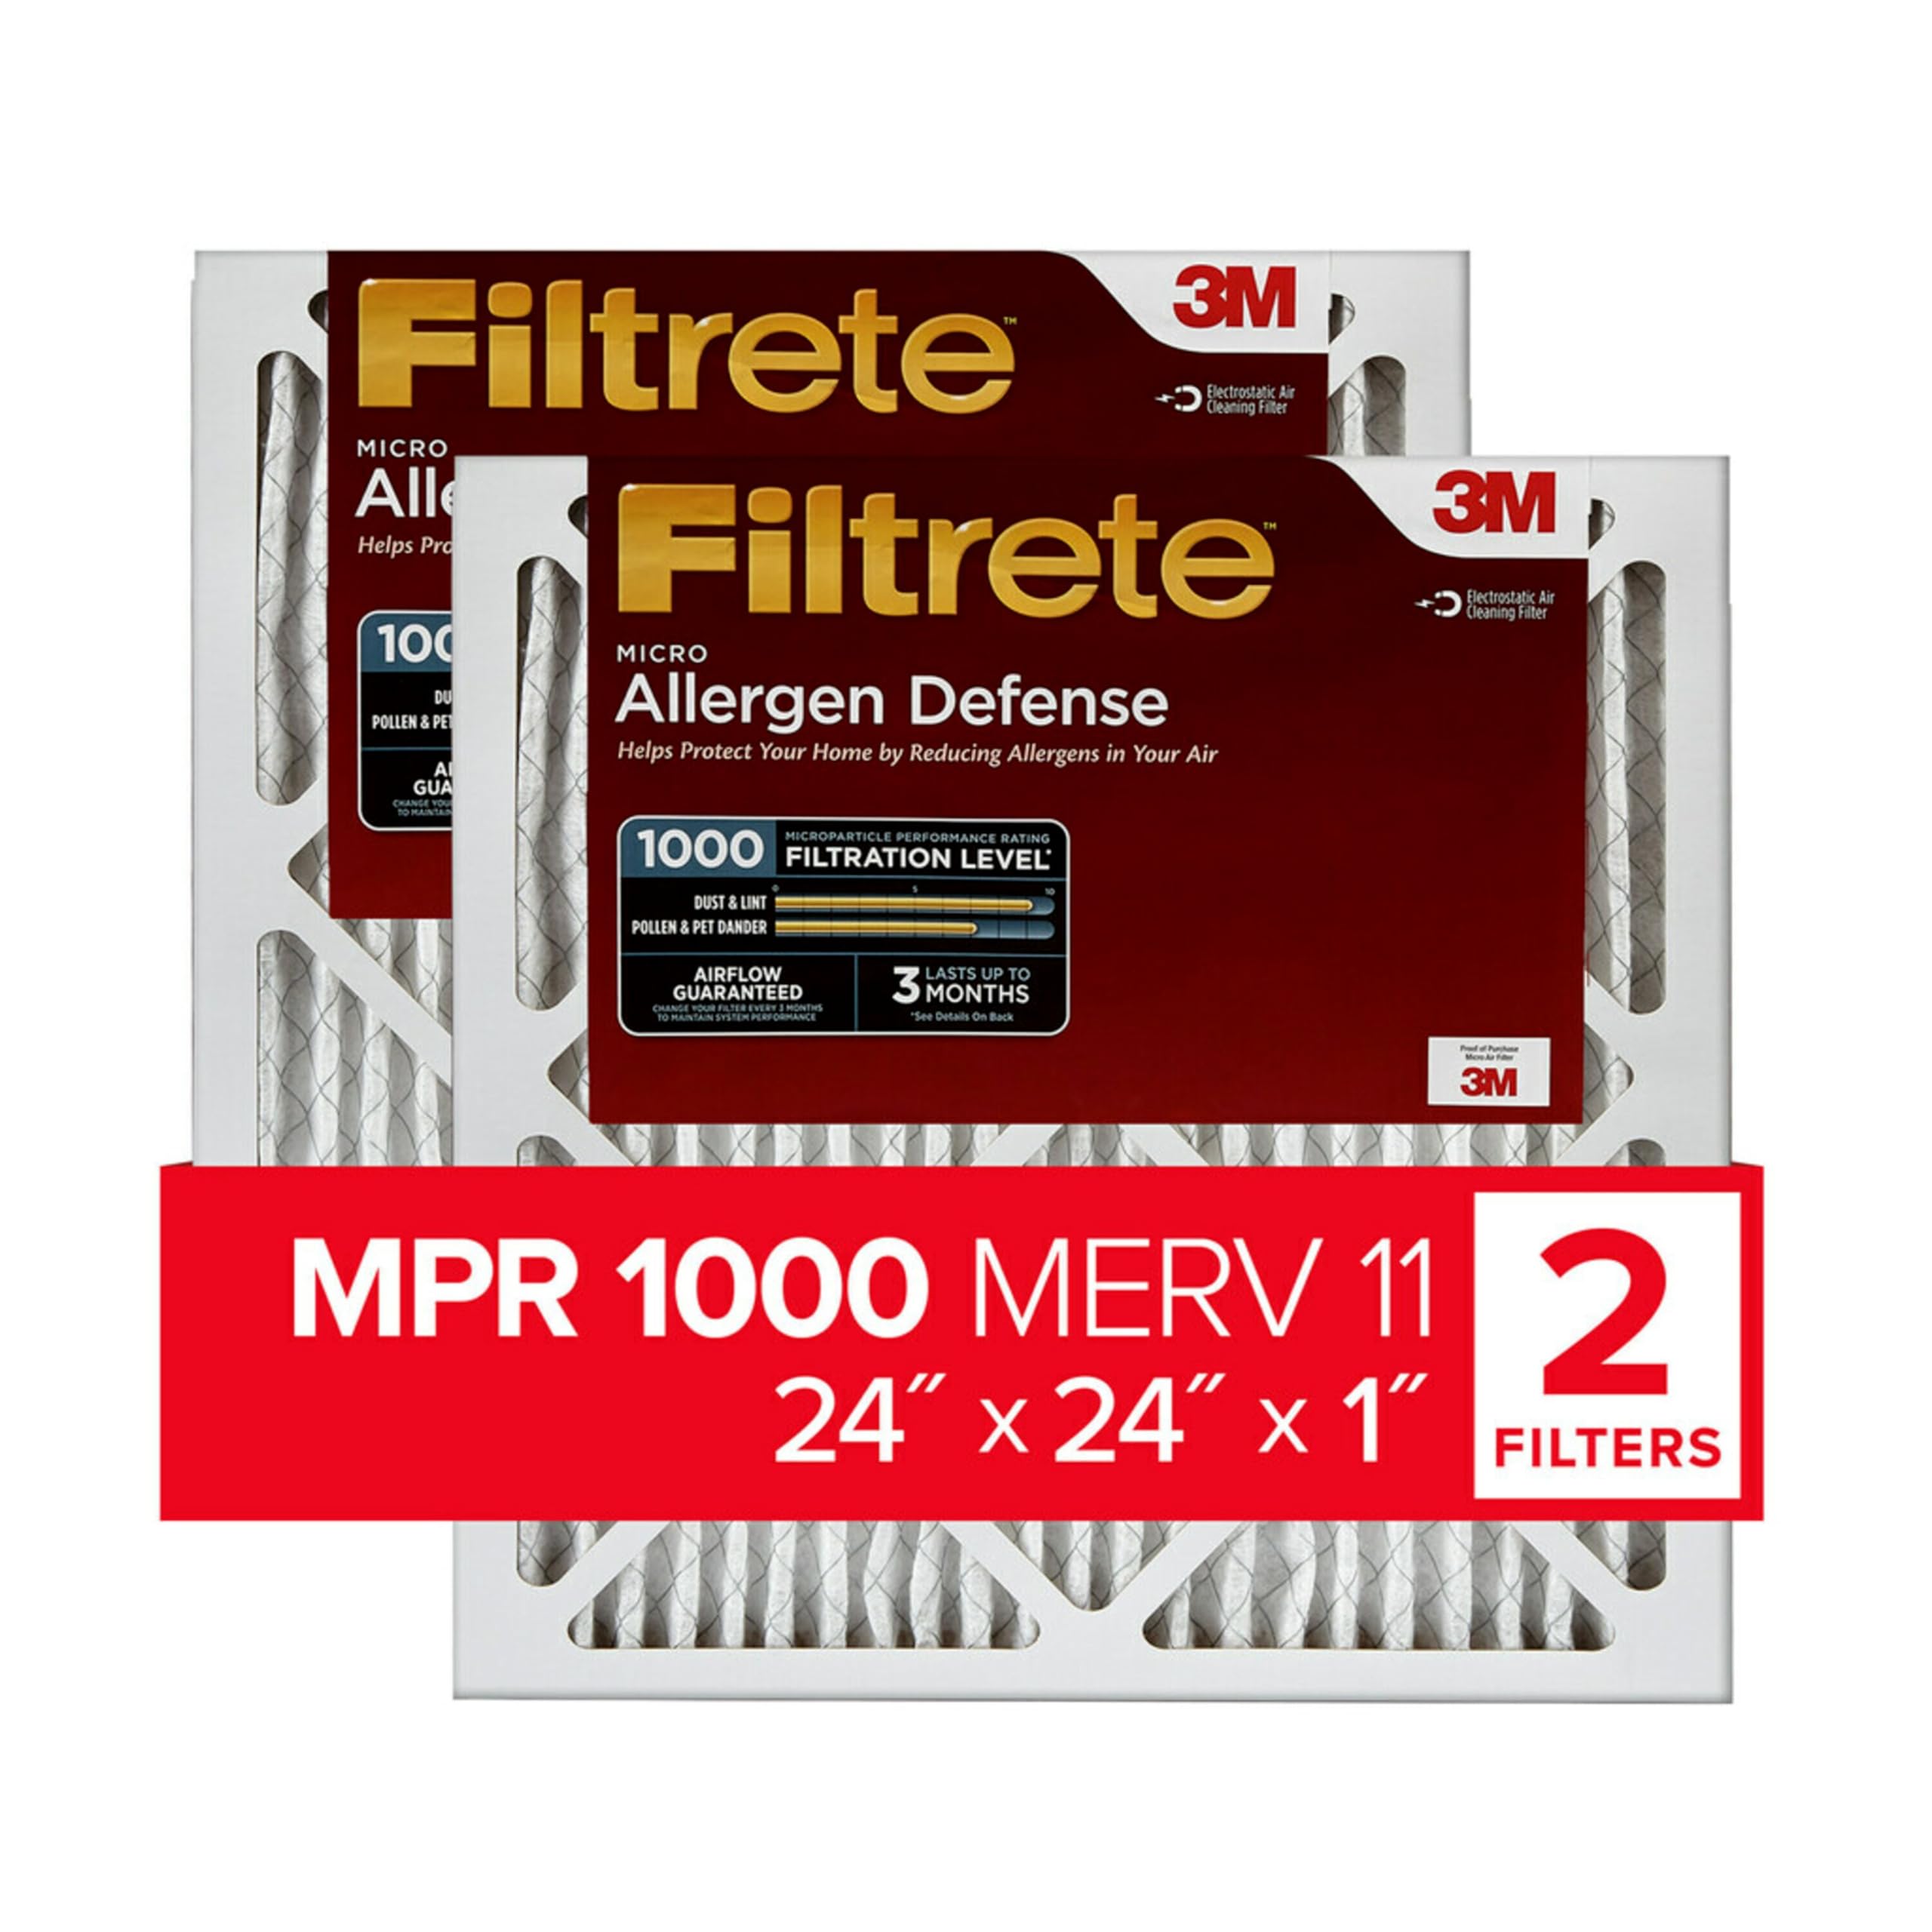 Filtrete 24x24x1 Luftfilter MPR 1000 MERV 11, Allergen Defense, 2er Pack (genaue Maße 23,81 x 23,81 x 0,81)